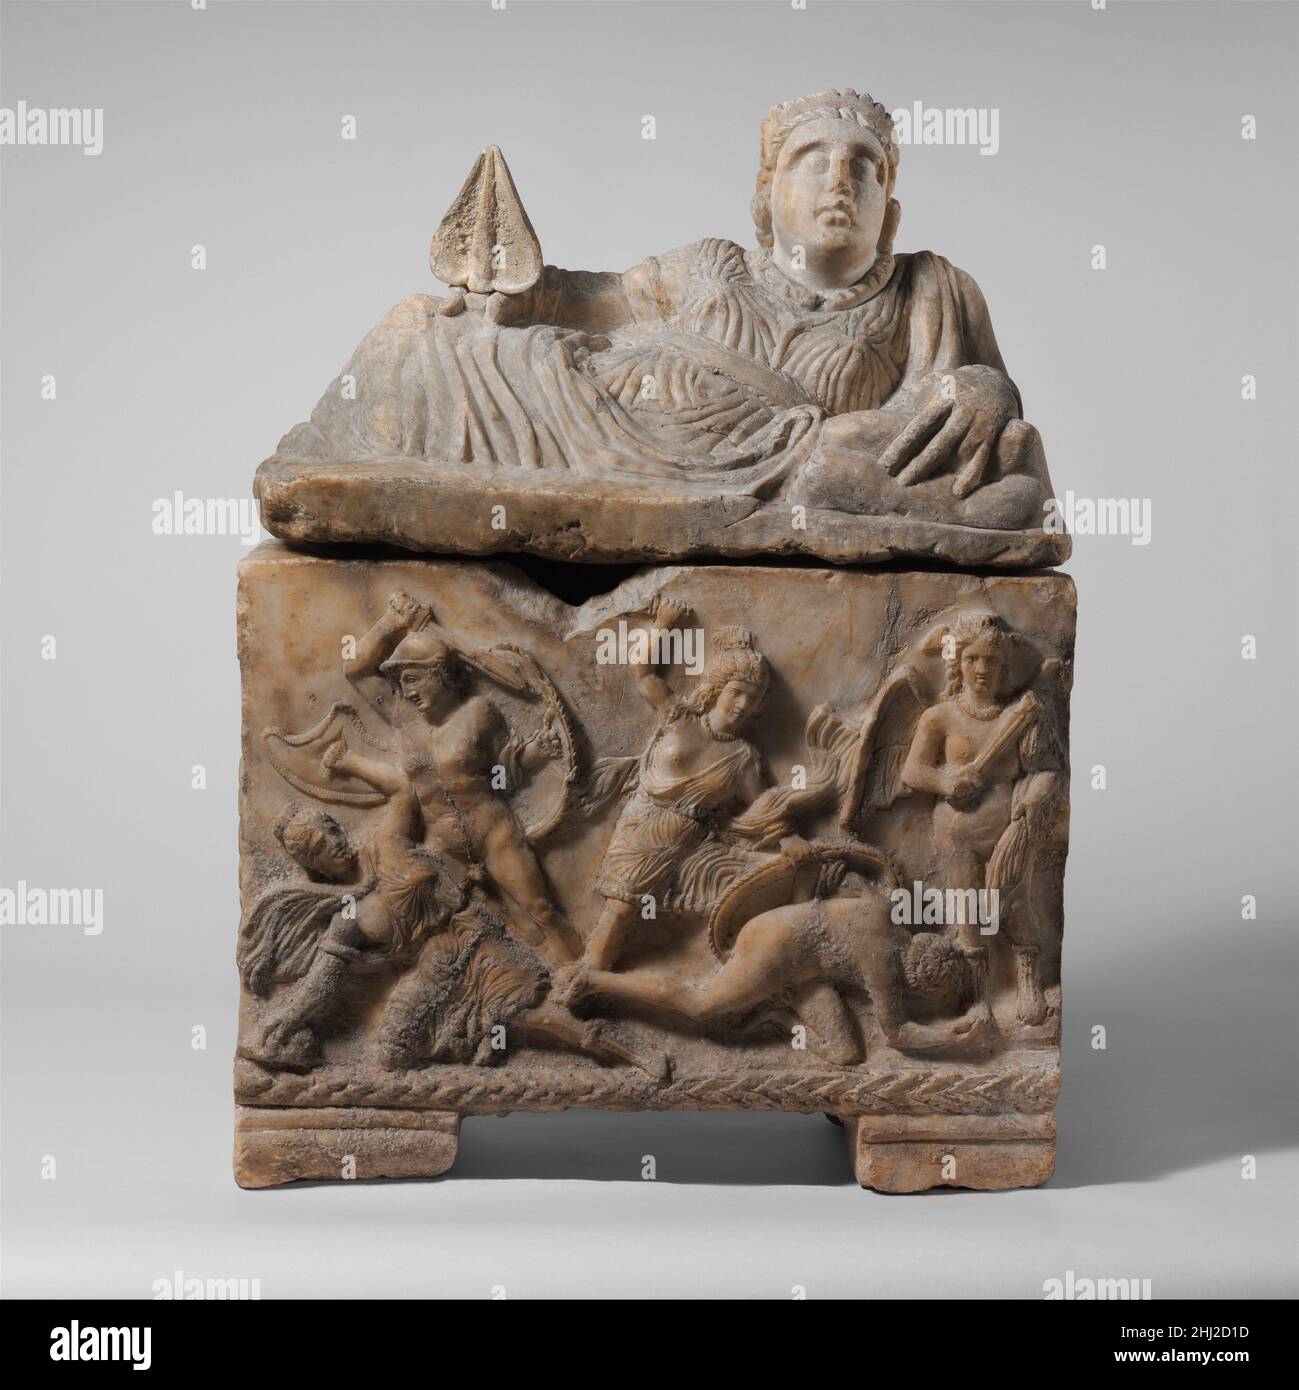 Alabastro urna cineraria 3rd siglo B.C. Etruscan La mujer reclinada  representada en la tapa lleva un collar de torque pesado y sostiene un  ventilador en su mano derecha. El friso representa dos